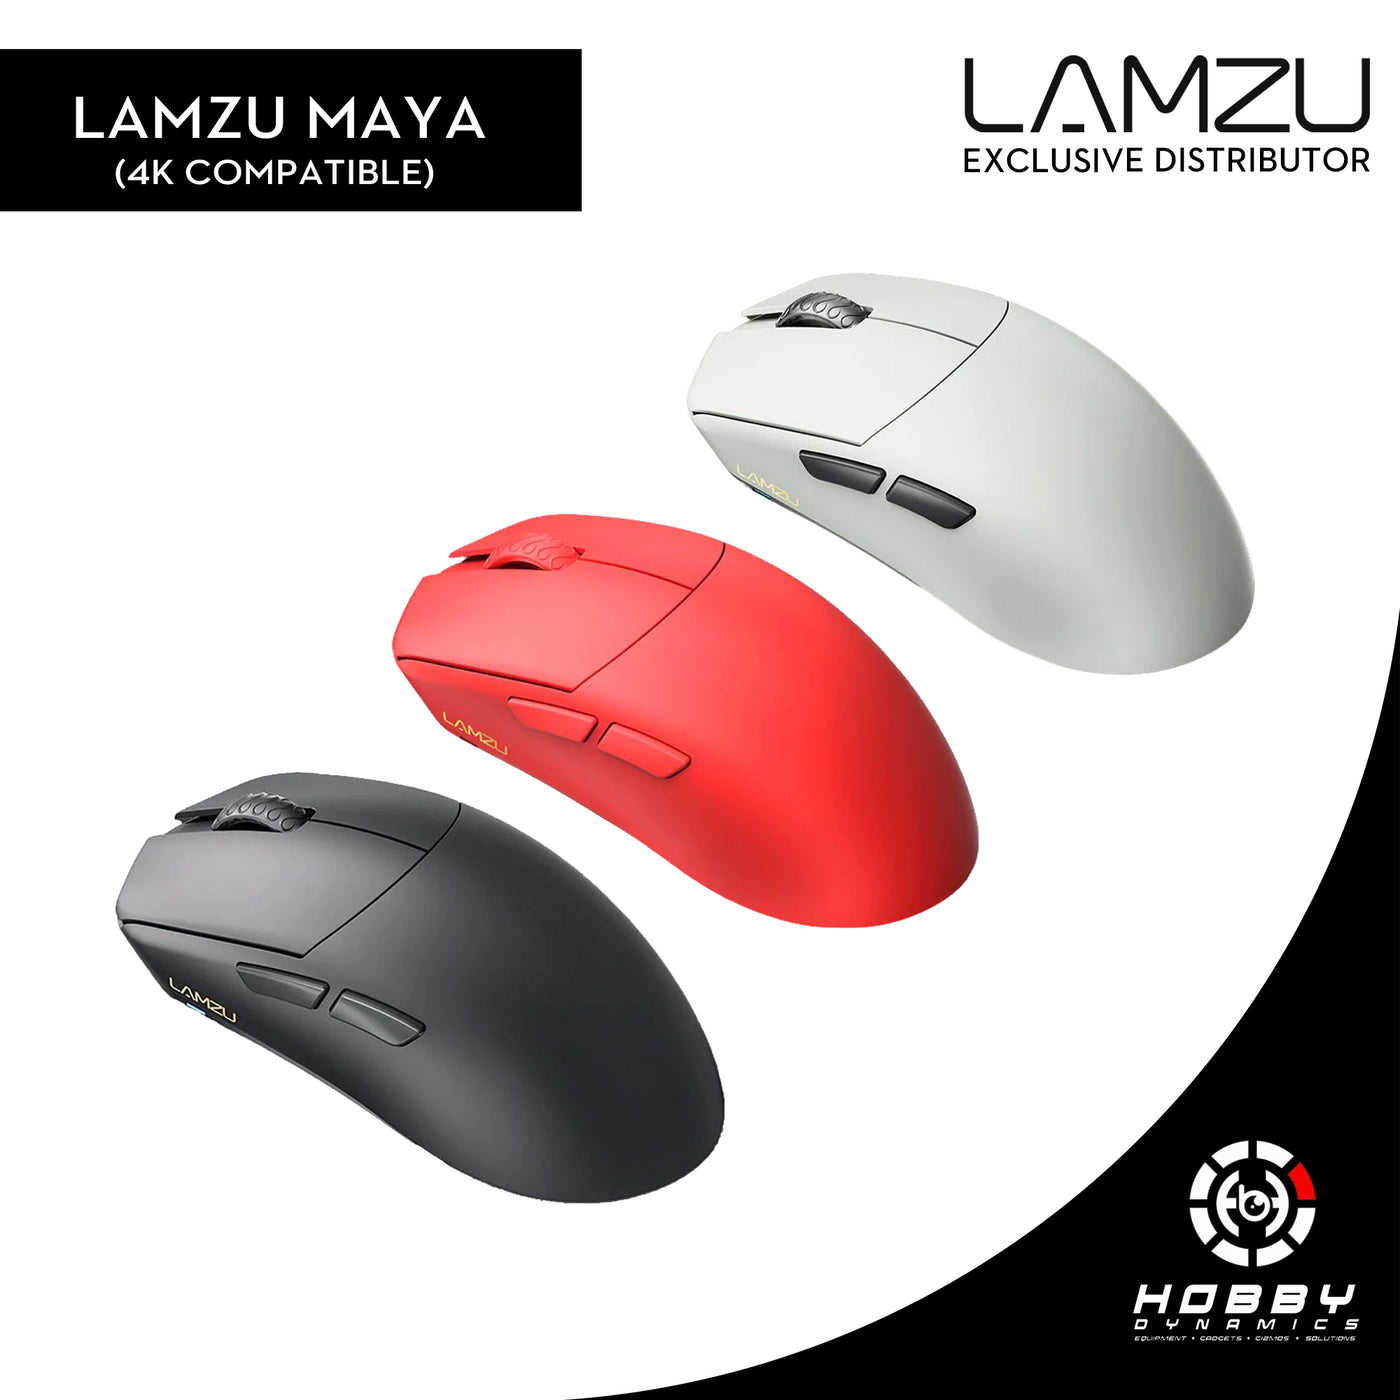 Lamzu Maya Wireless Gaming Mouse (4K Compatible)